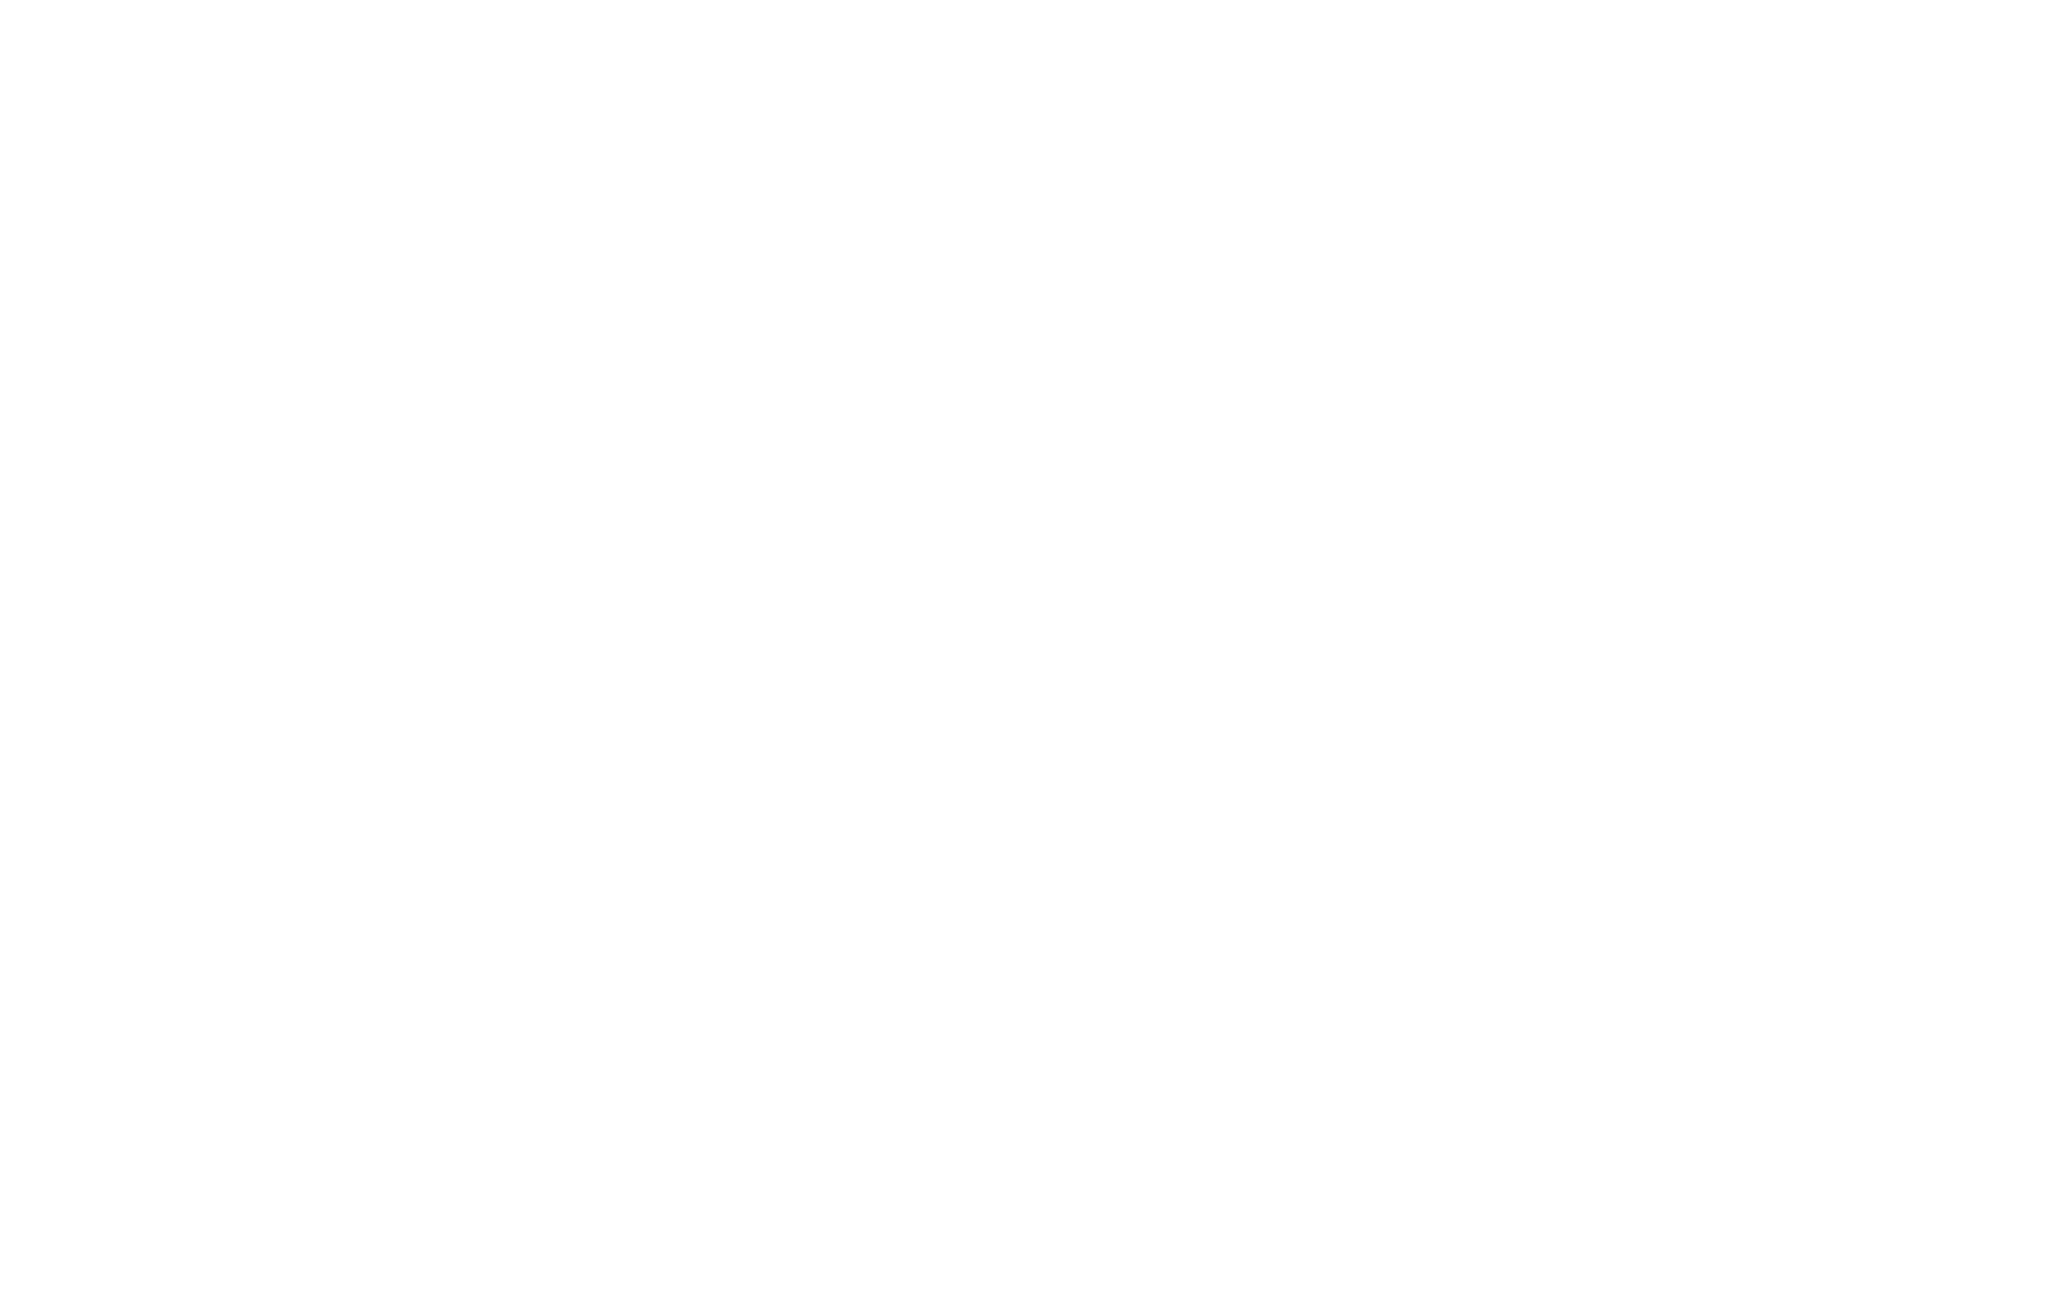 Grey Barn Boutique